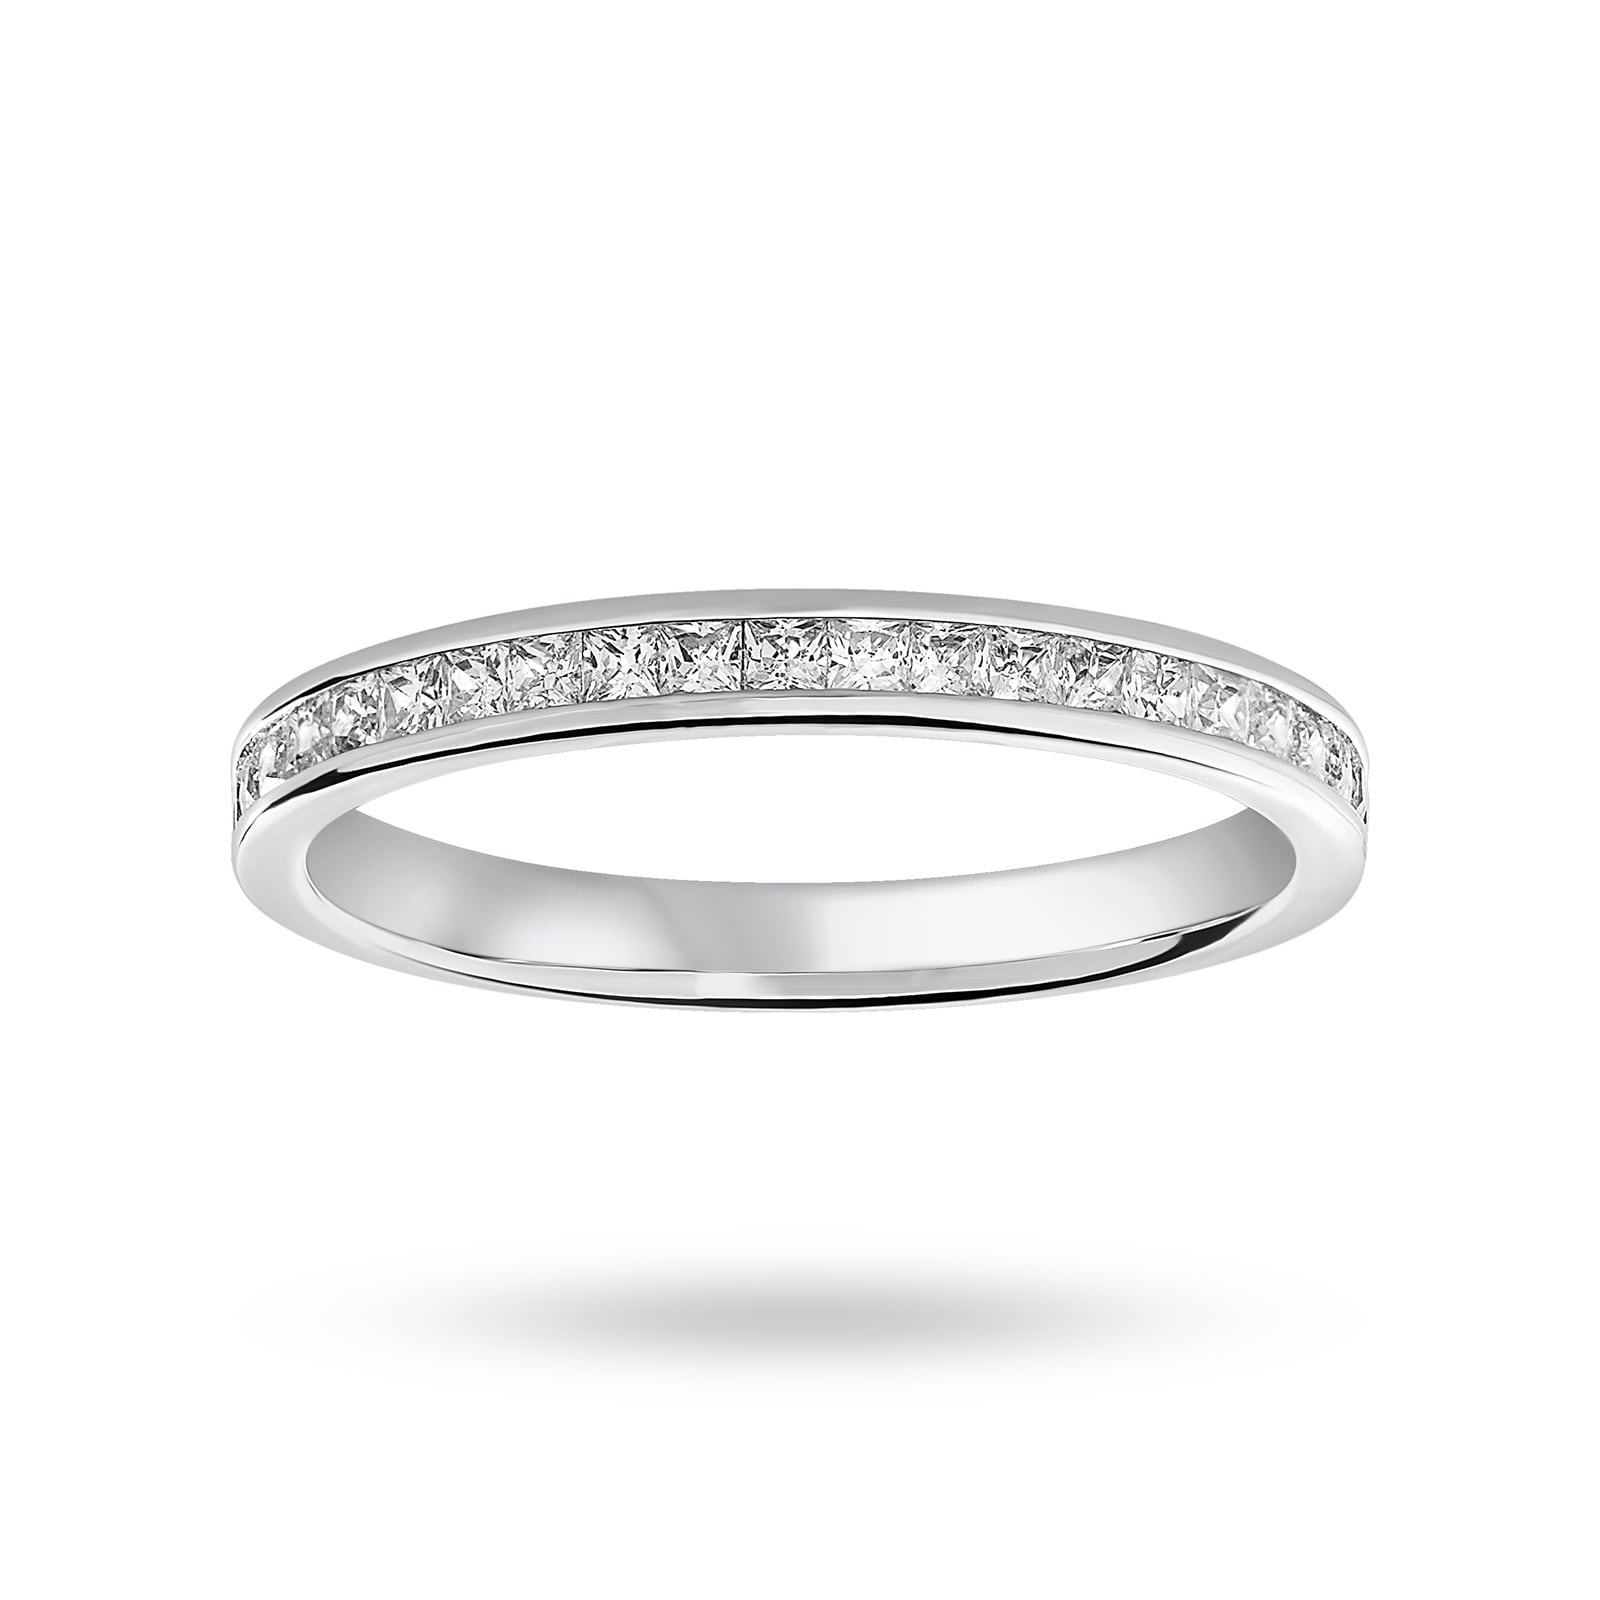 9 Carat White Gold 0.33 Carat Princess Cut Half Eternity Ring - Ring Size M